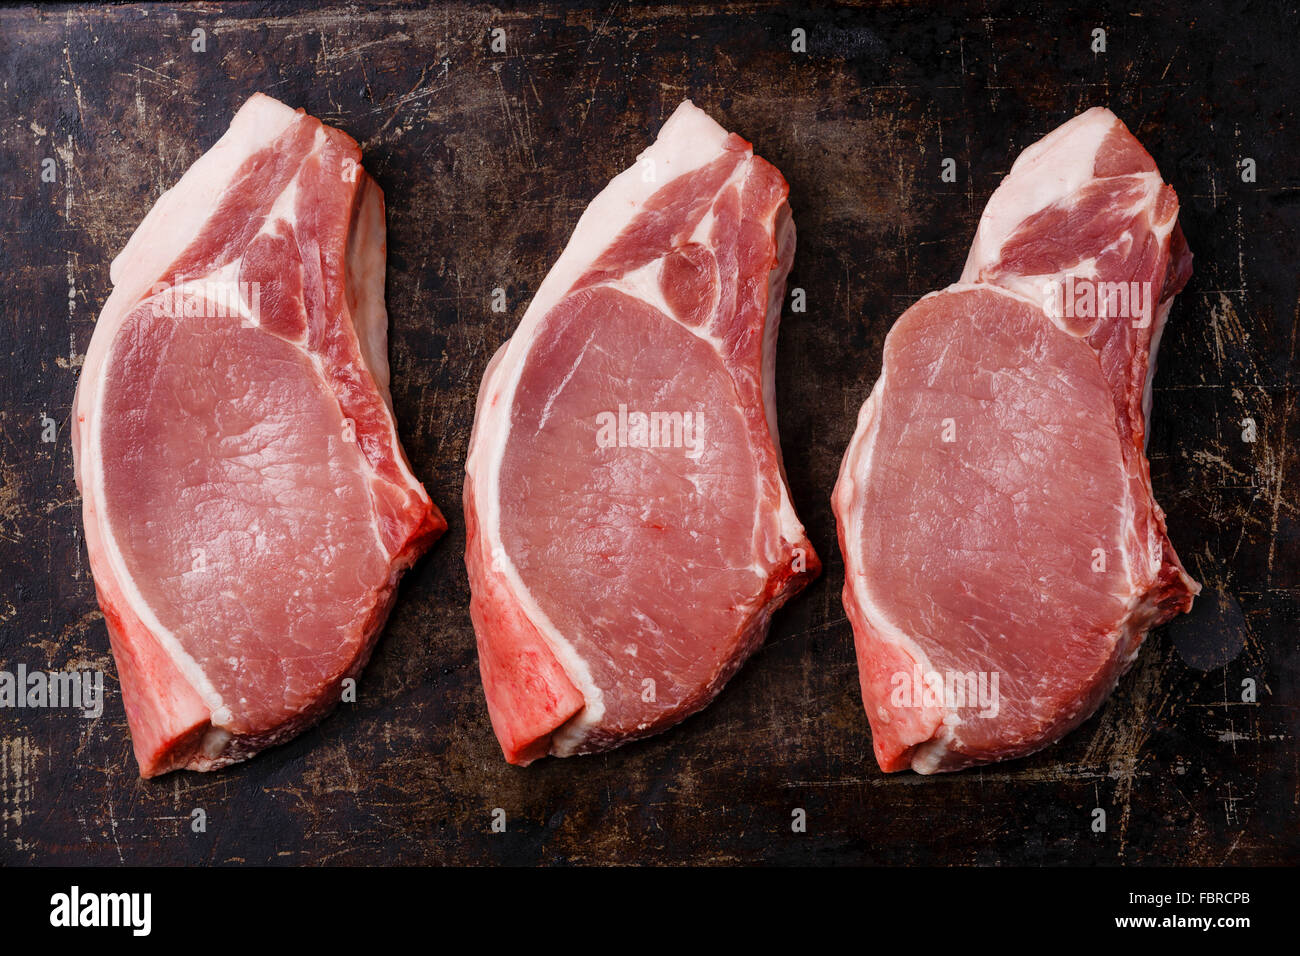 Raw fresh uncooked Pork meat chop steak on bone on dark background Stock Photo